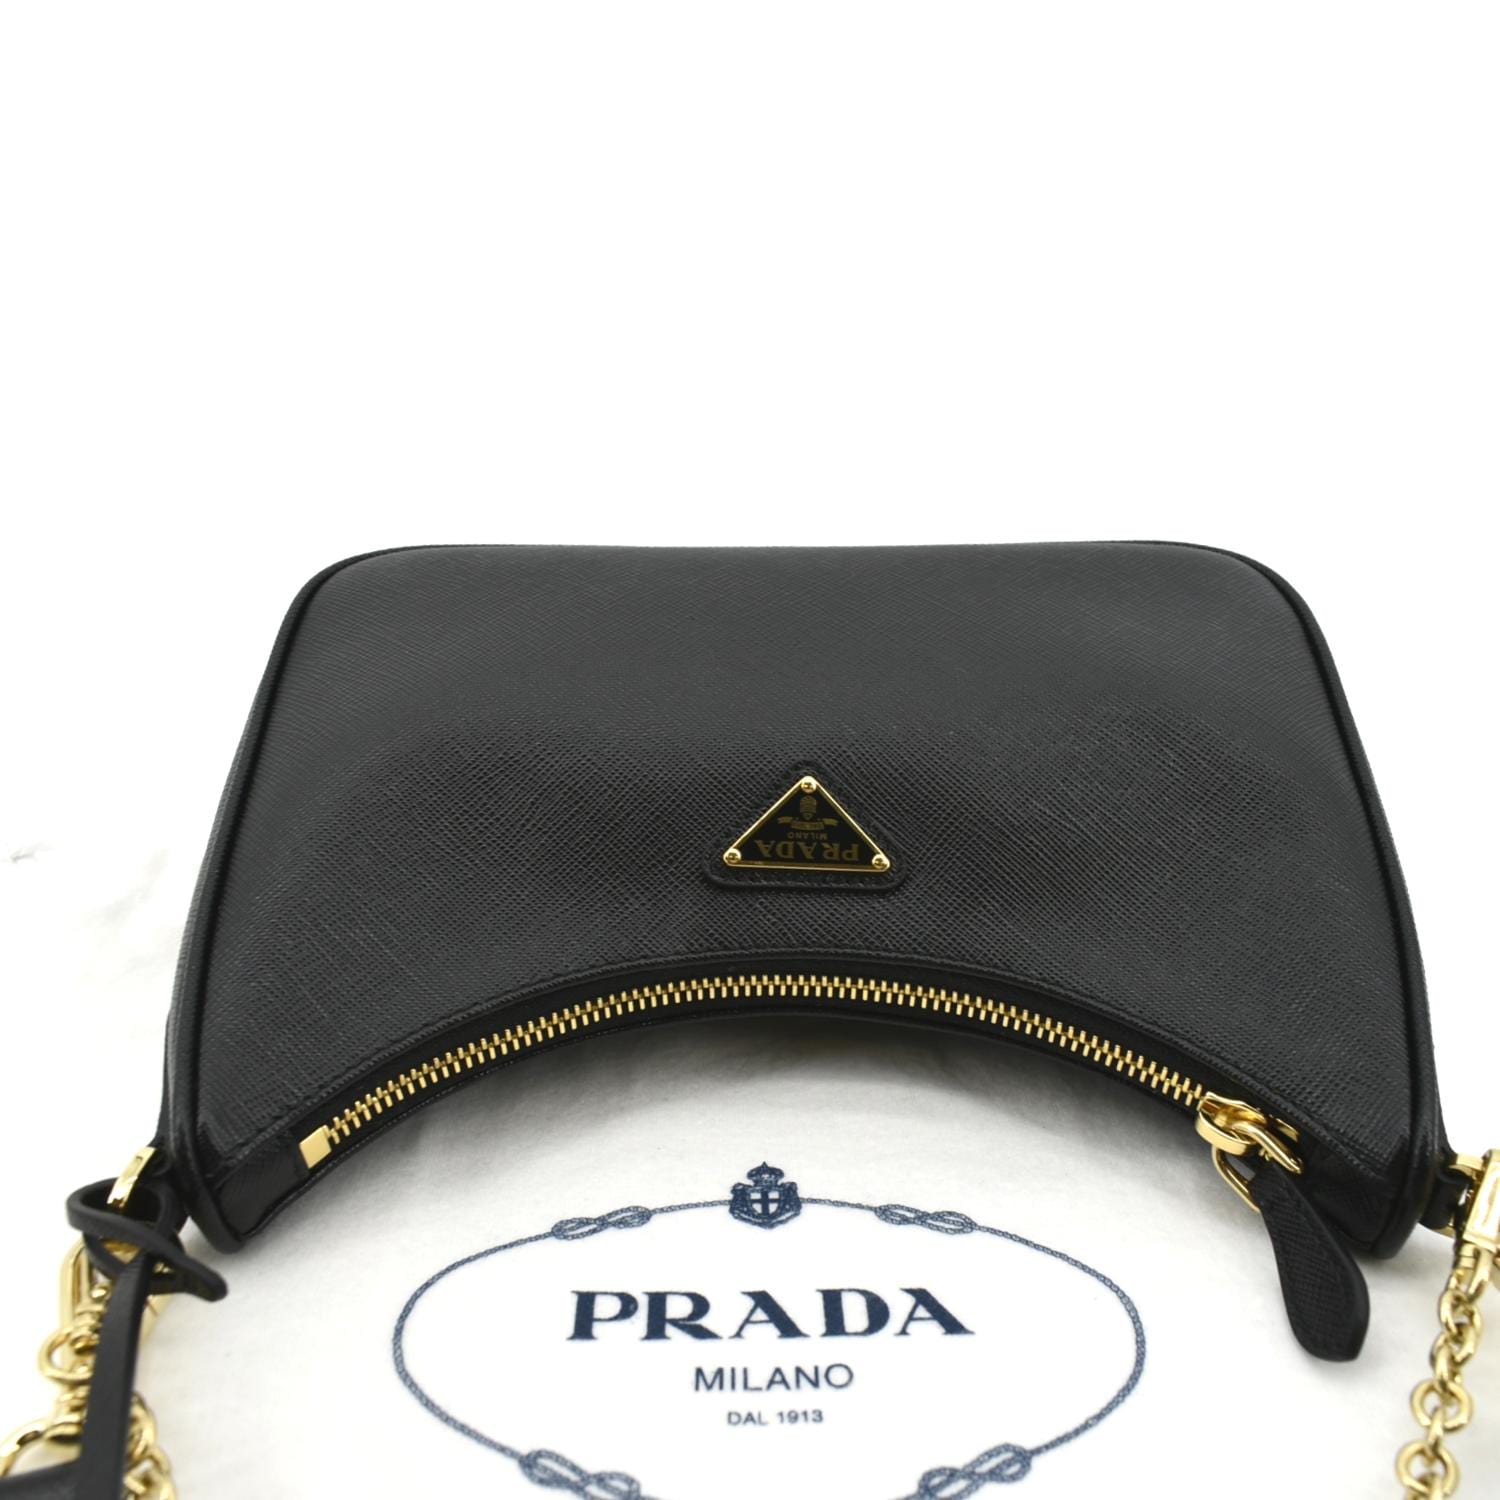 Prada Re-edition 2005 Saffiano Leather Crossbody Bag (Shoulder